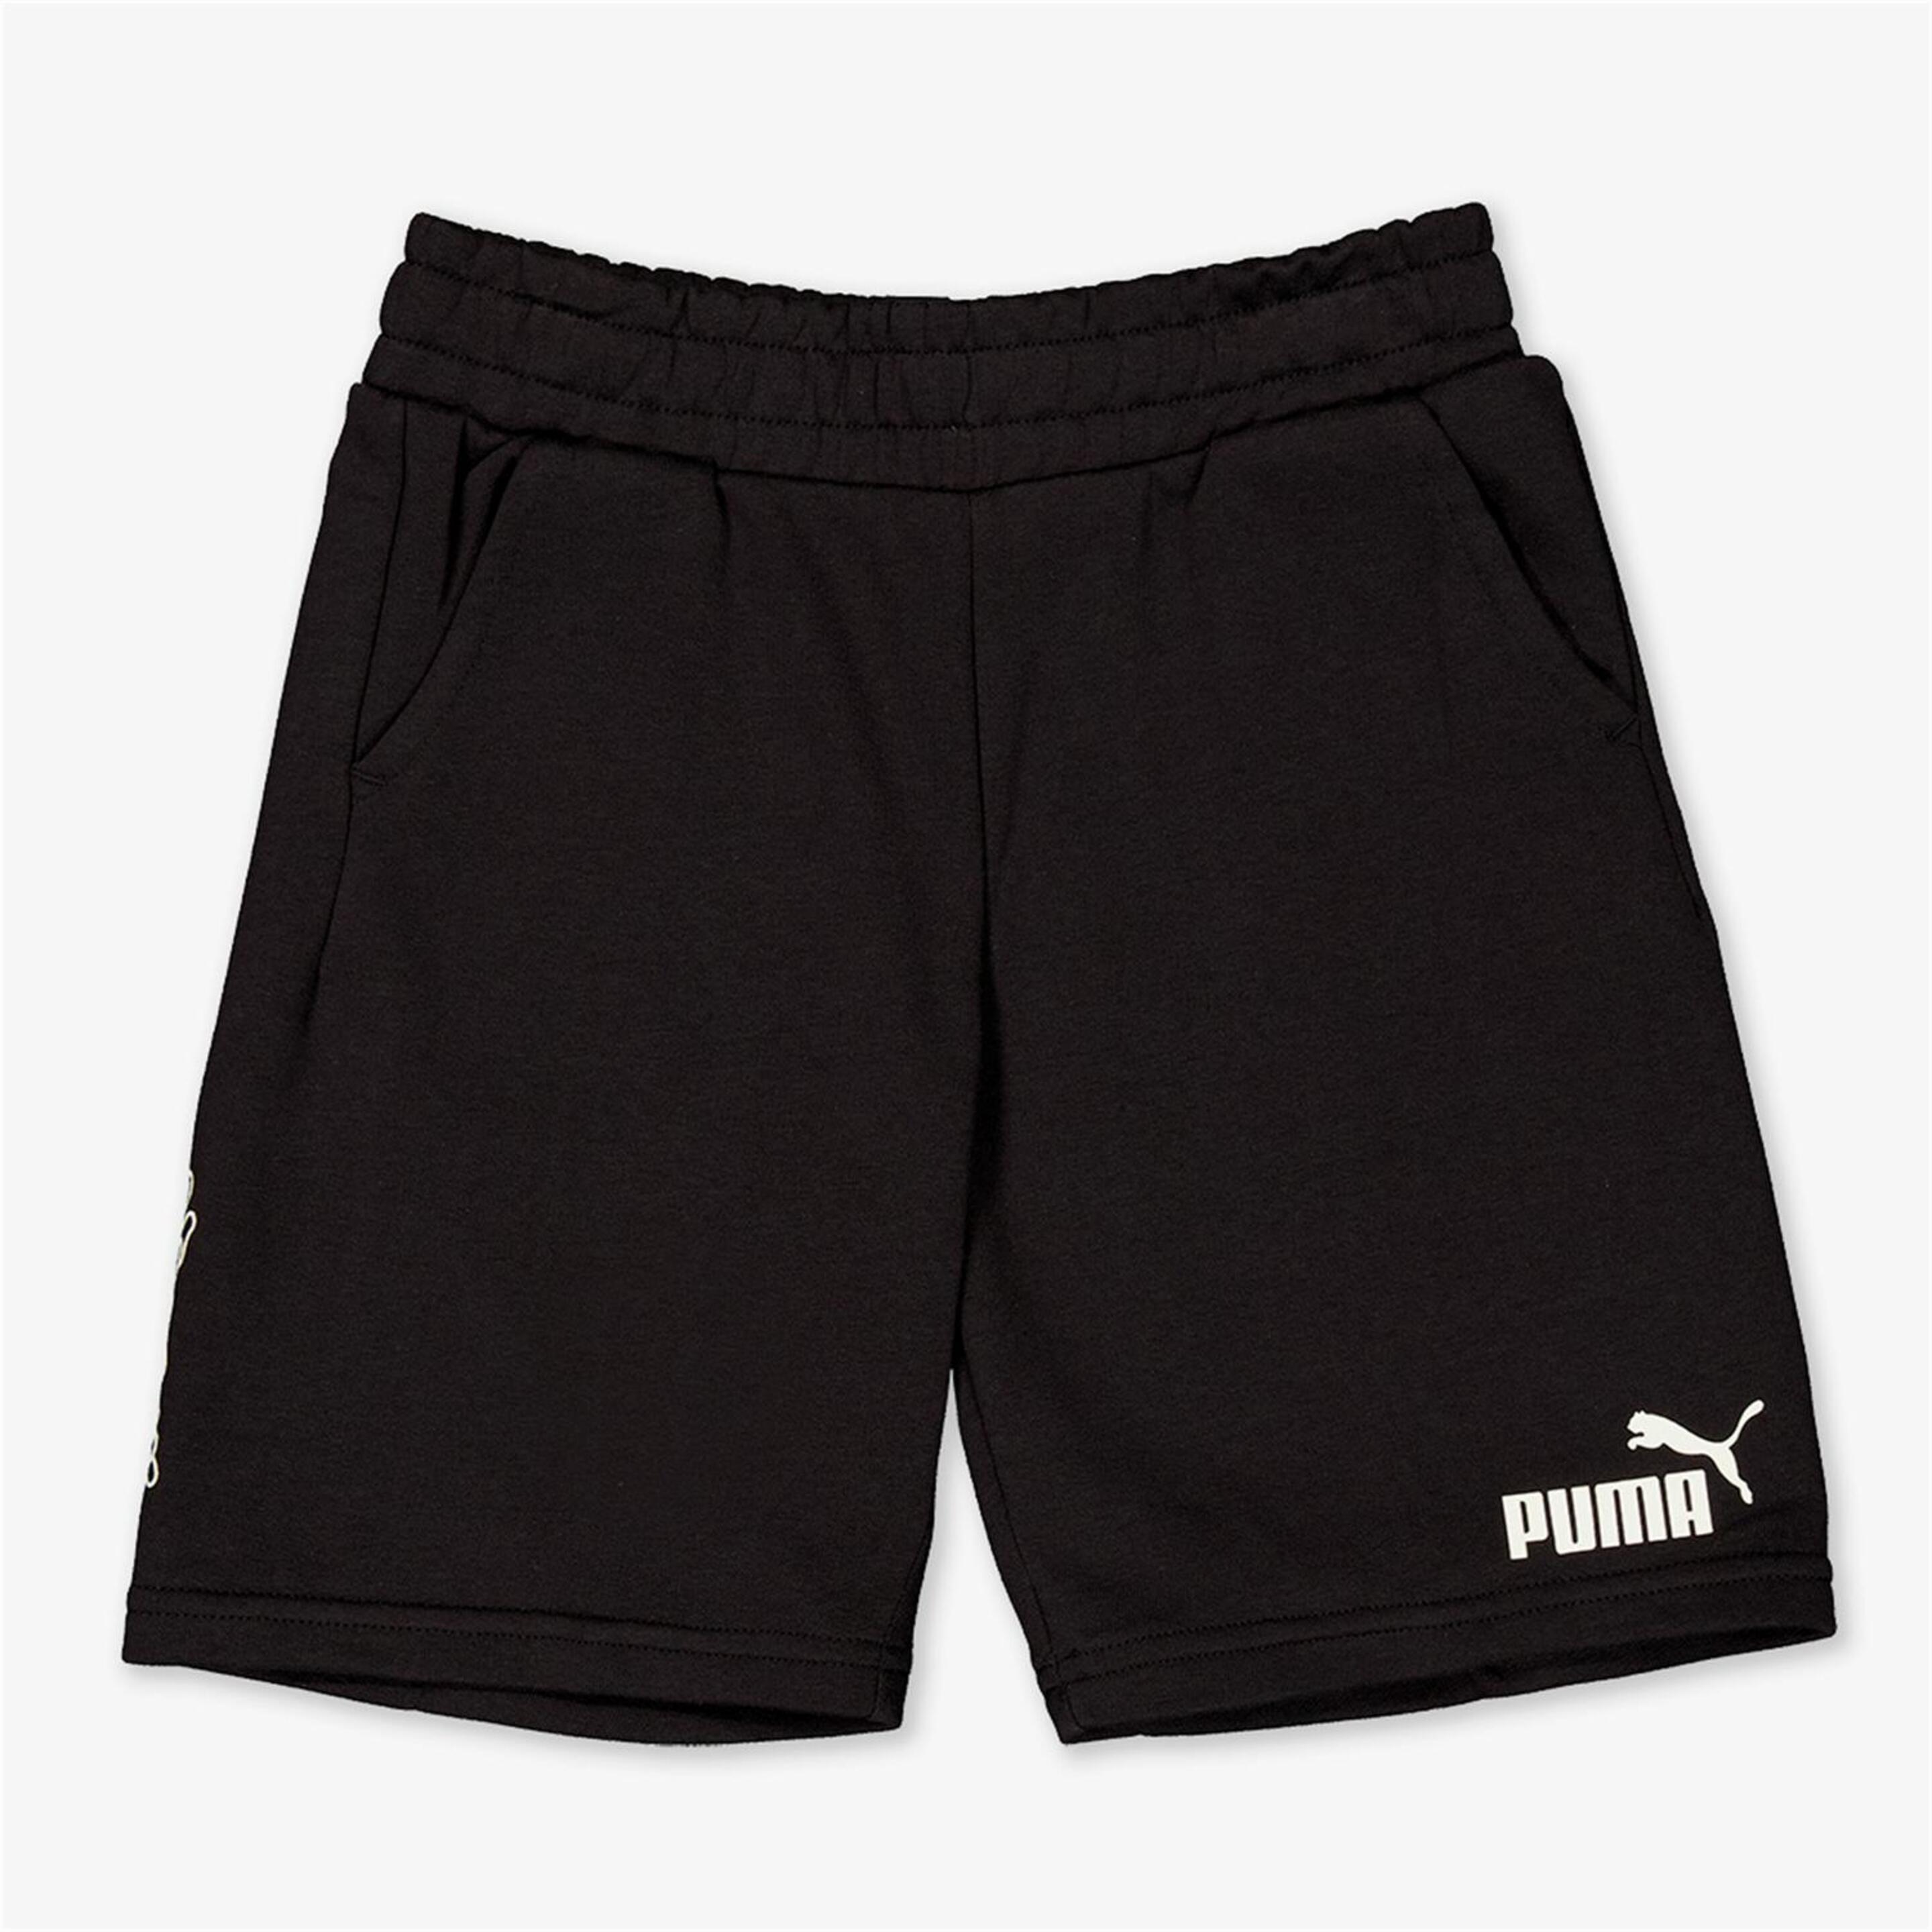 Pantalón Puma - negro - Bermuda Niño